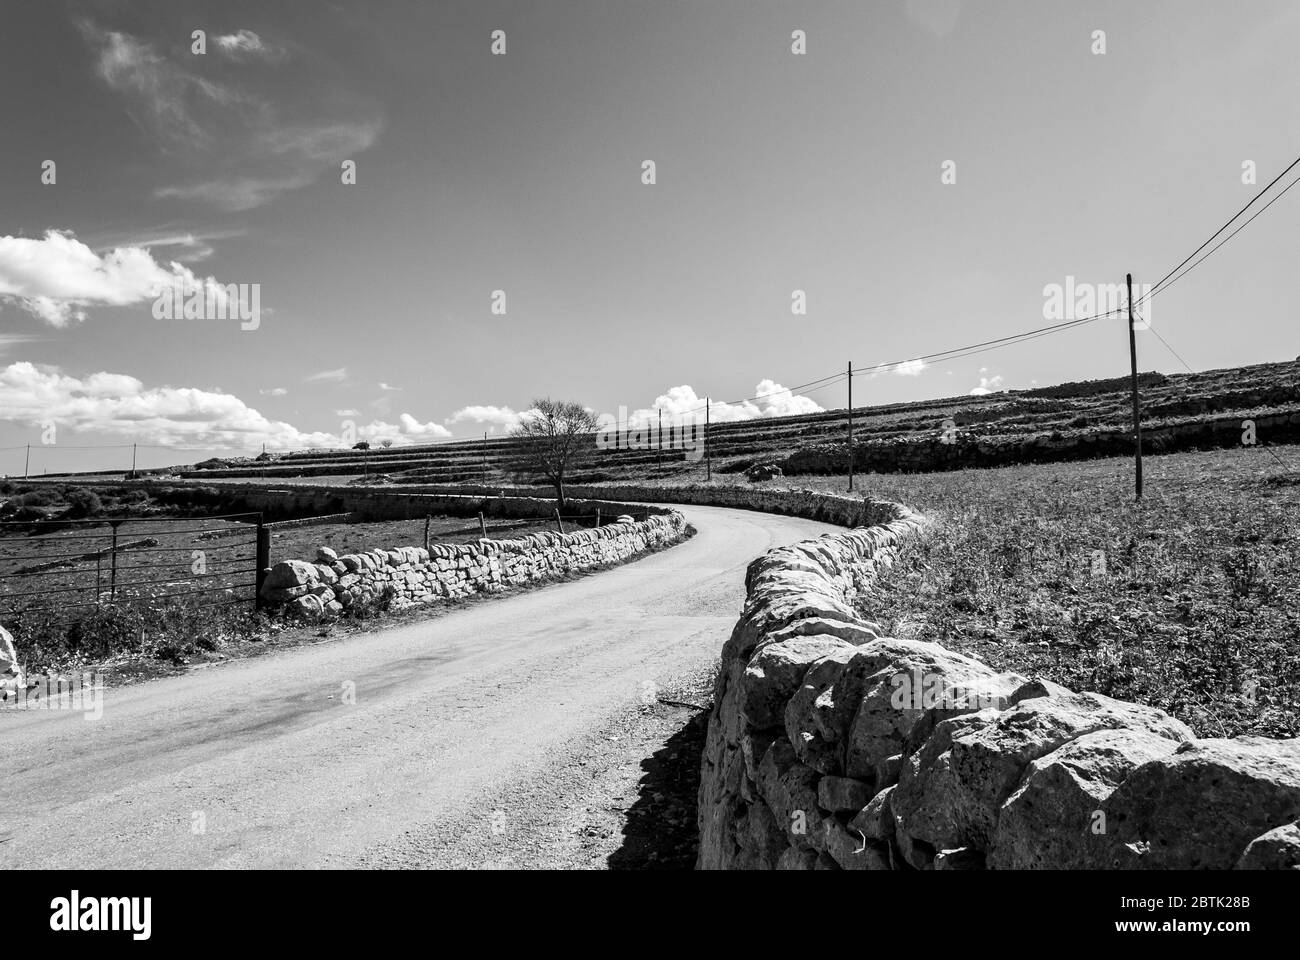 Paysage rural de la campagne du sud-est de la Sicile en pleine source, murs de pierre sèche, oliviers et caroubiers et balles de foin. Banque D'Images